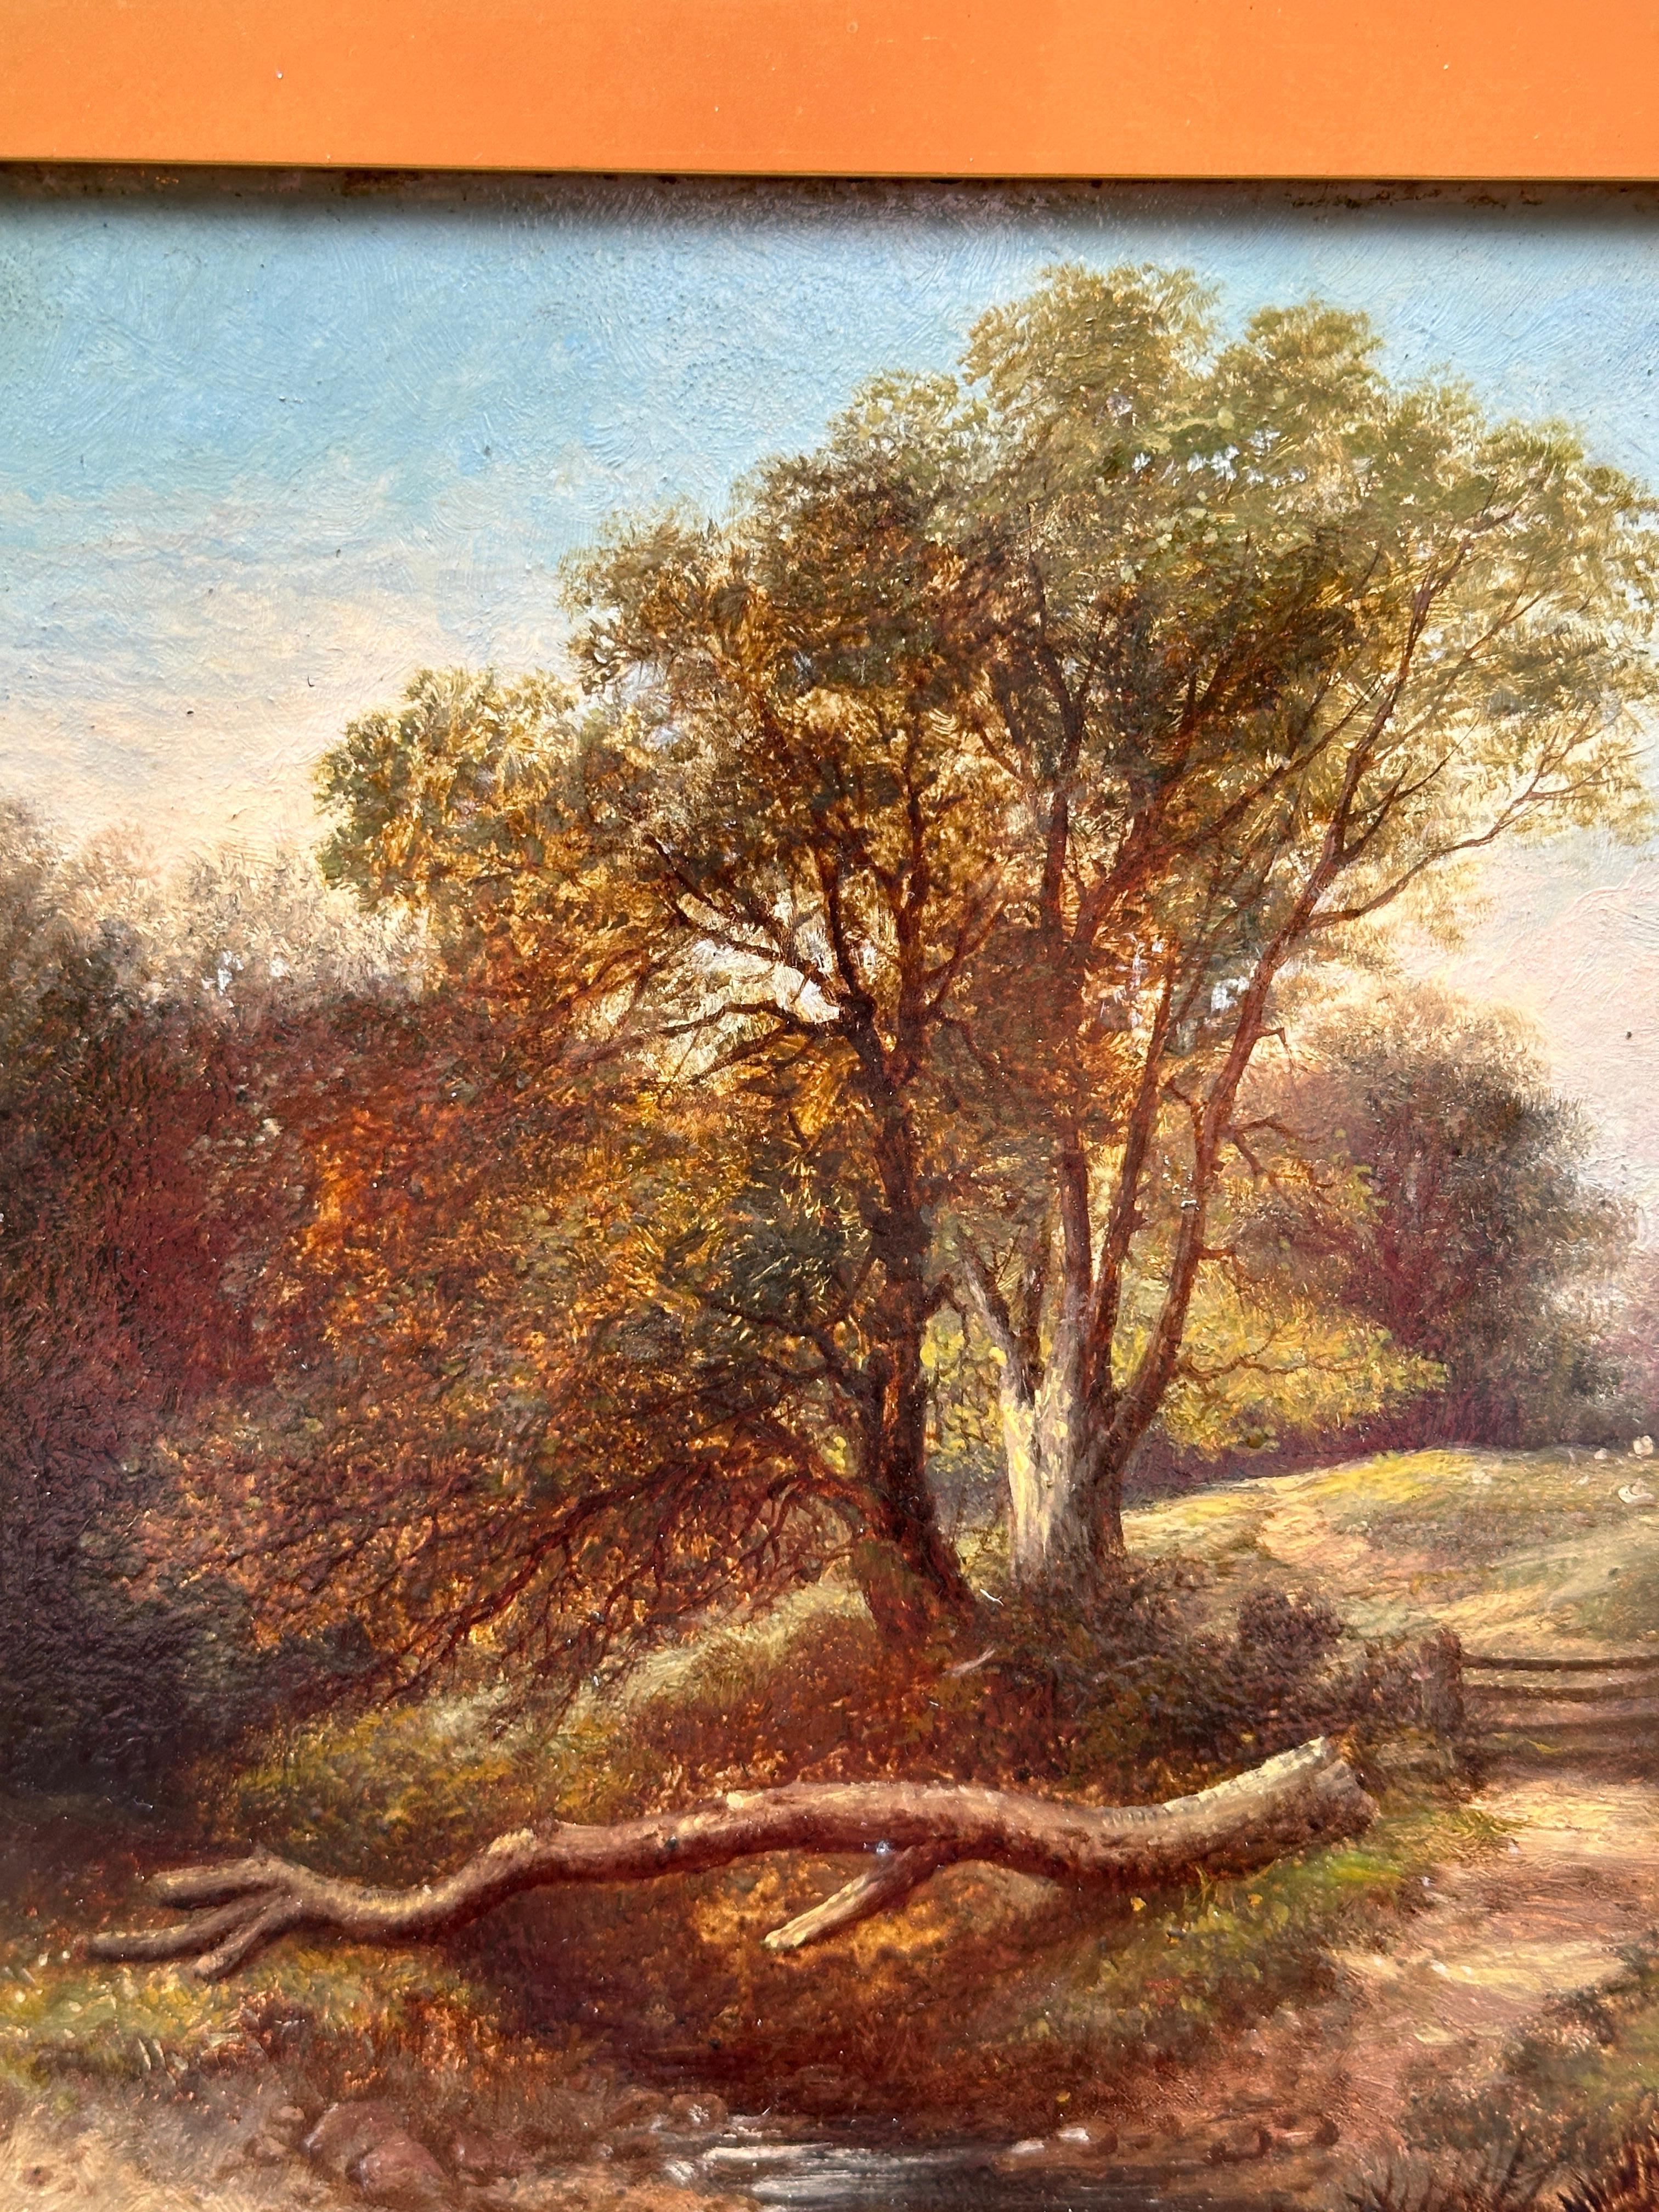 Englische Landschaft aus dem 19. Jahrhundert mit Eichen, einem Bach und Schafen auf einem Weg.

Eine wunderschöne klassische englische Landschaft aus der Mitte des 19. Jahrhunderts. Diese Art der Malerei war und ist wohl das beliebteste Sujet der